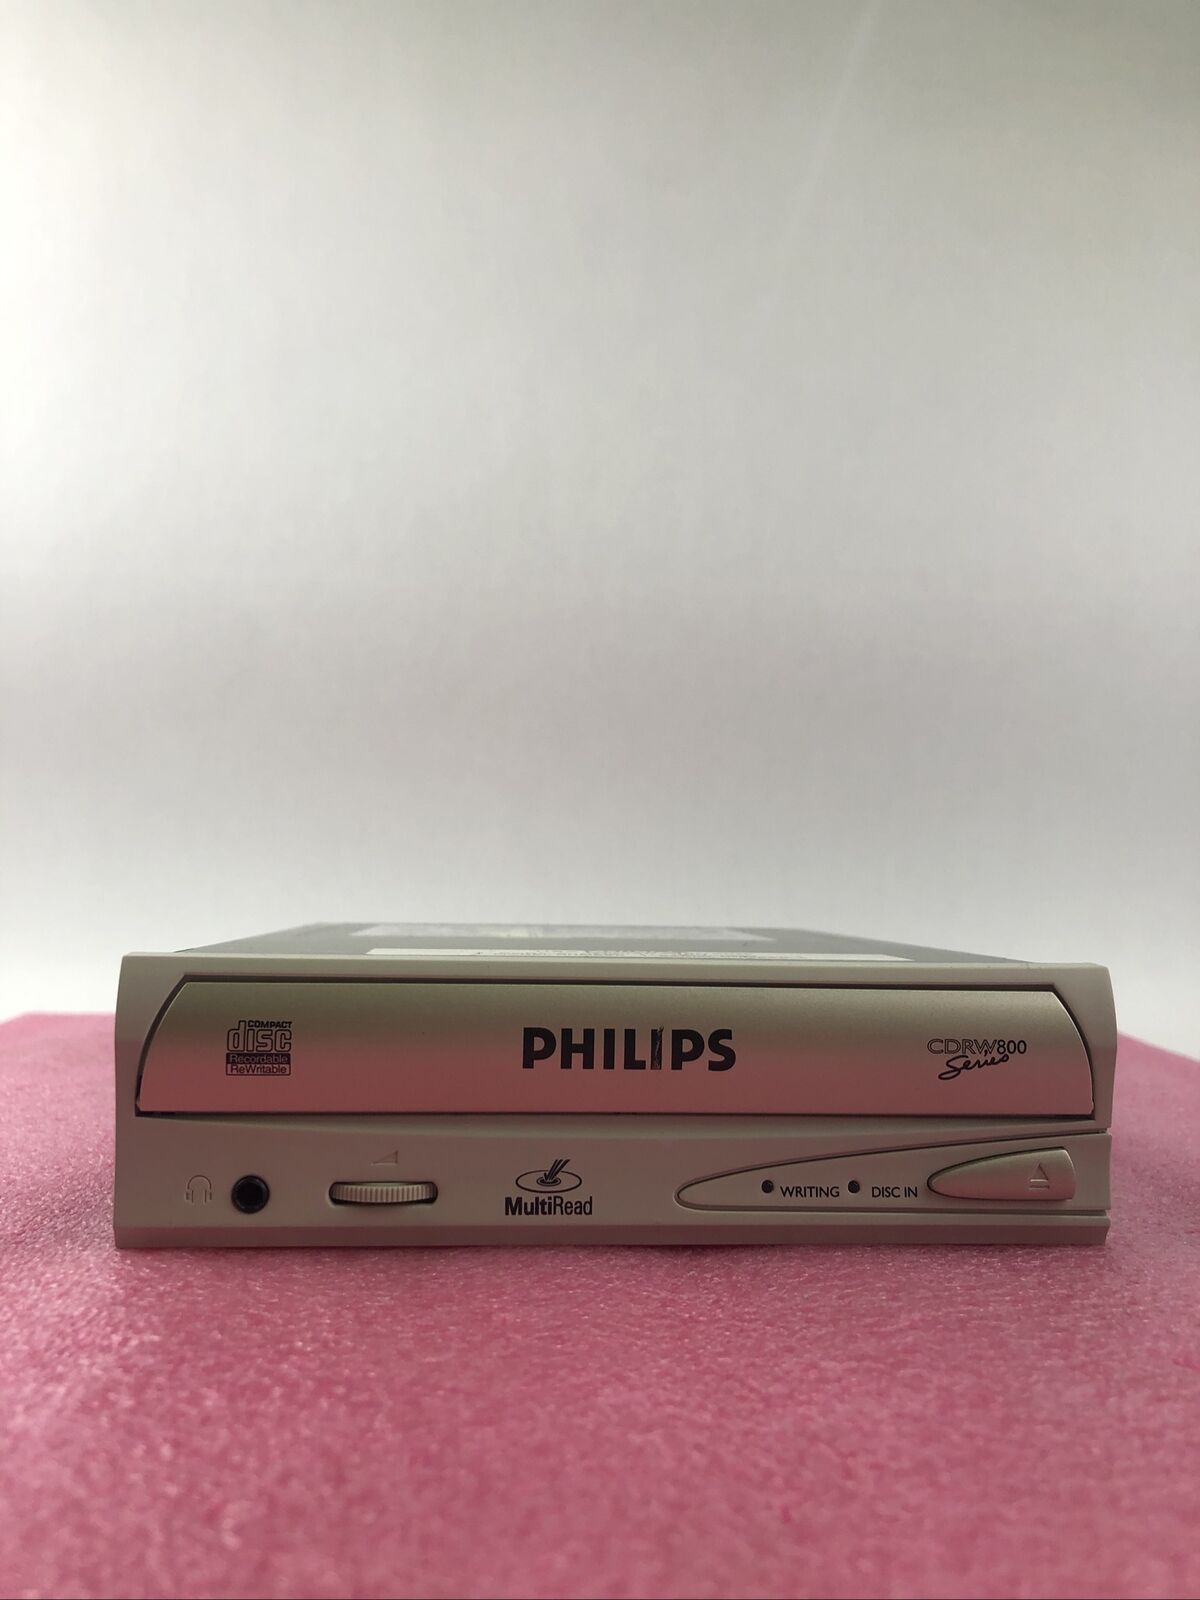 Philips PCRW804 CDRW800 Series Optical Drive